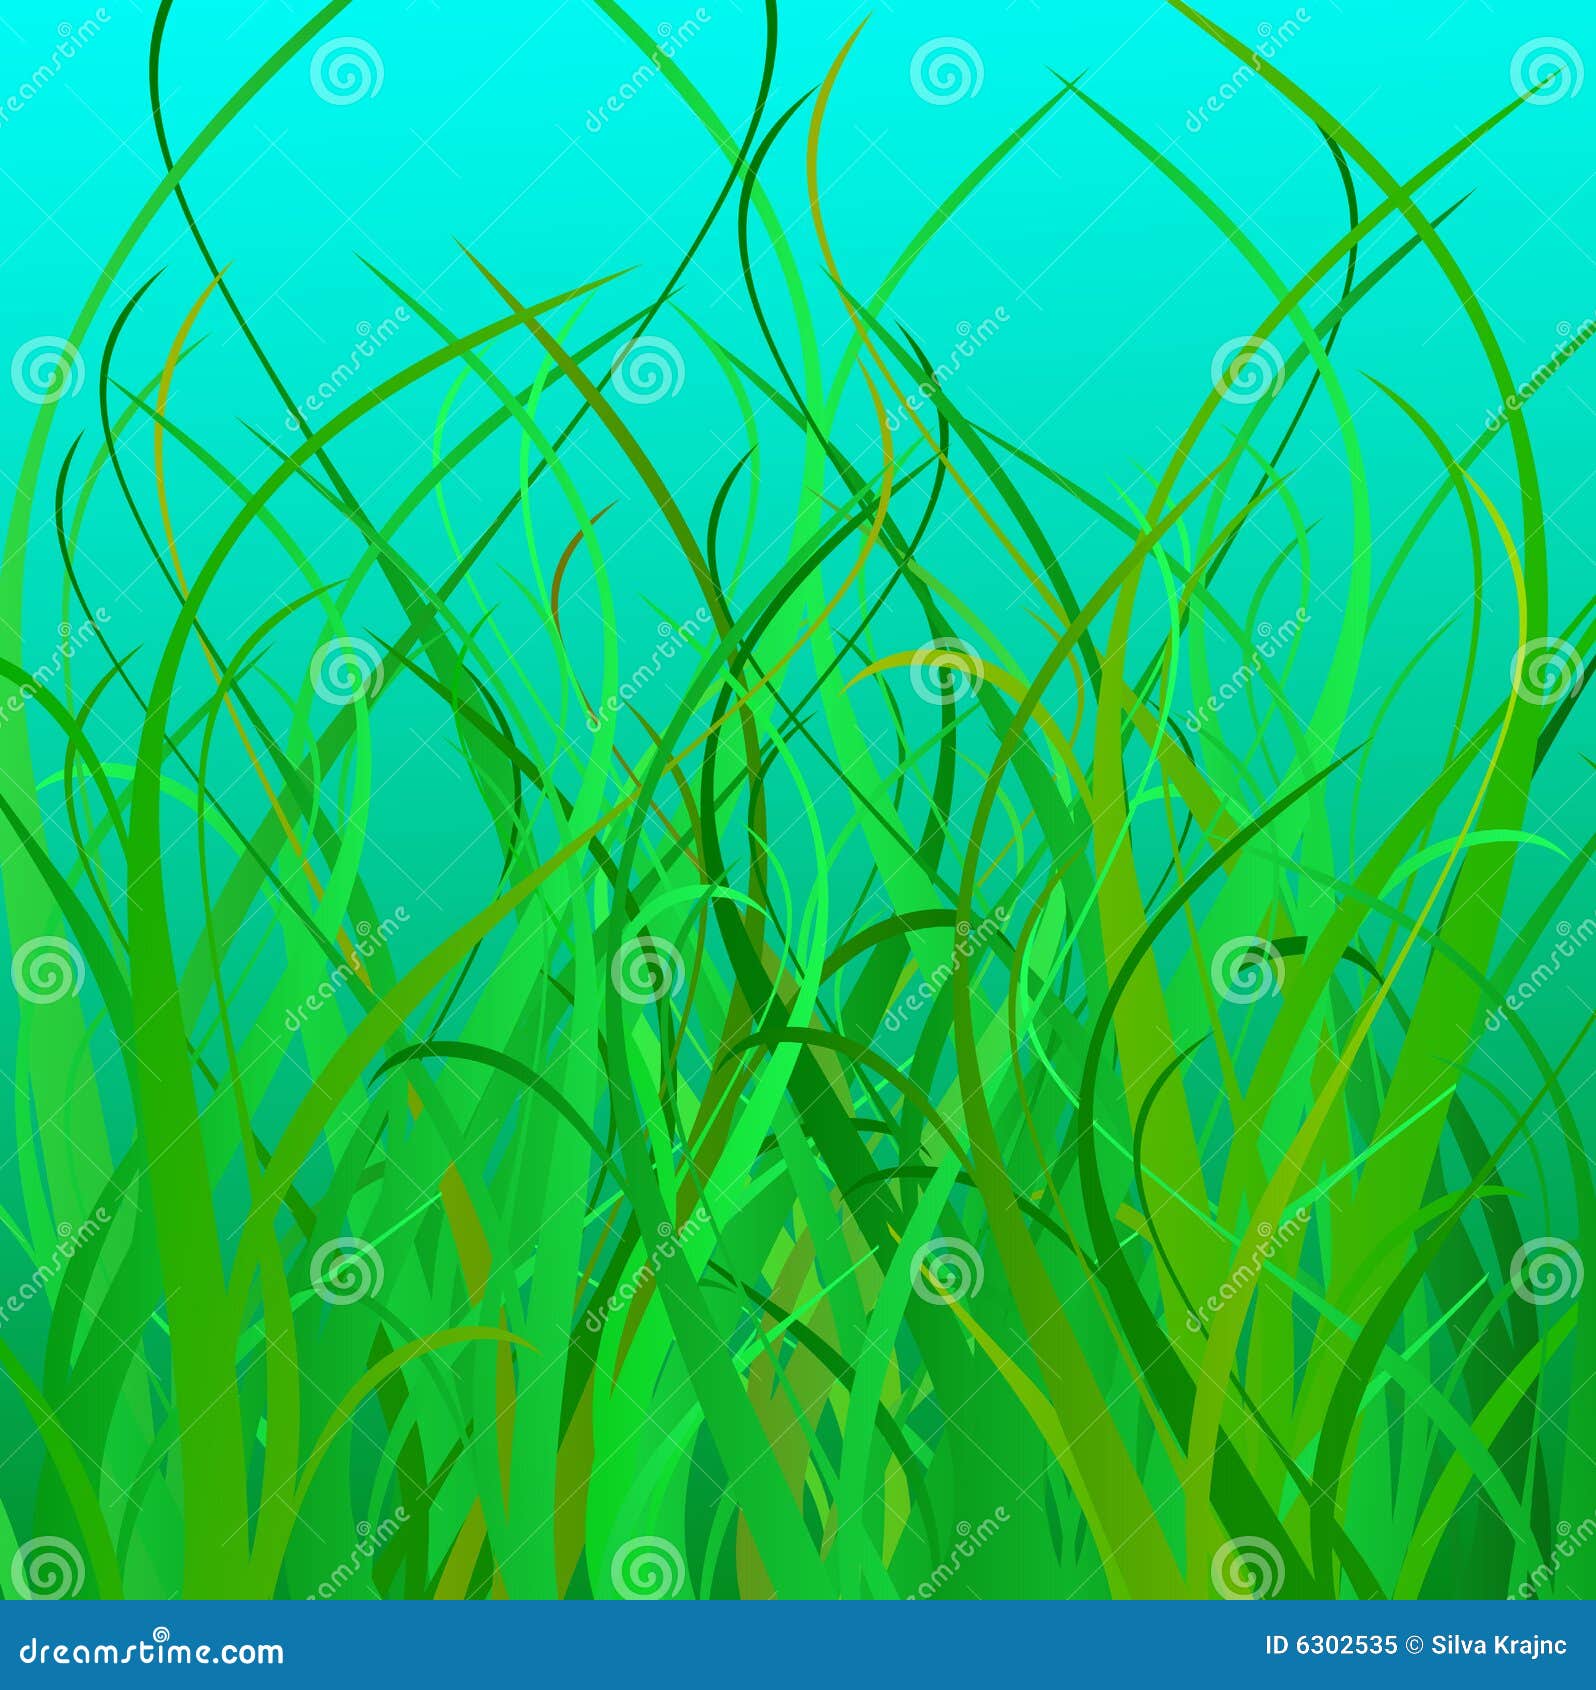 free clip art sea grass - photo #36